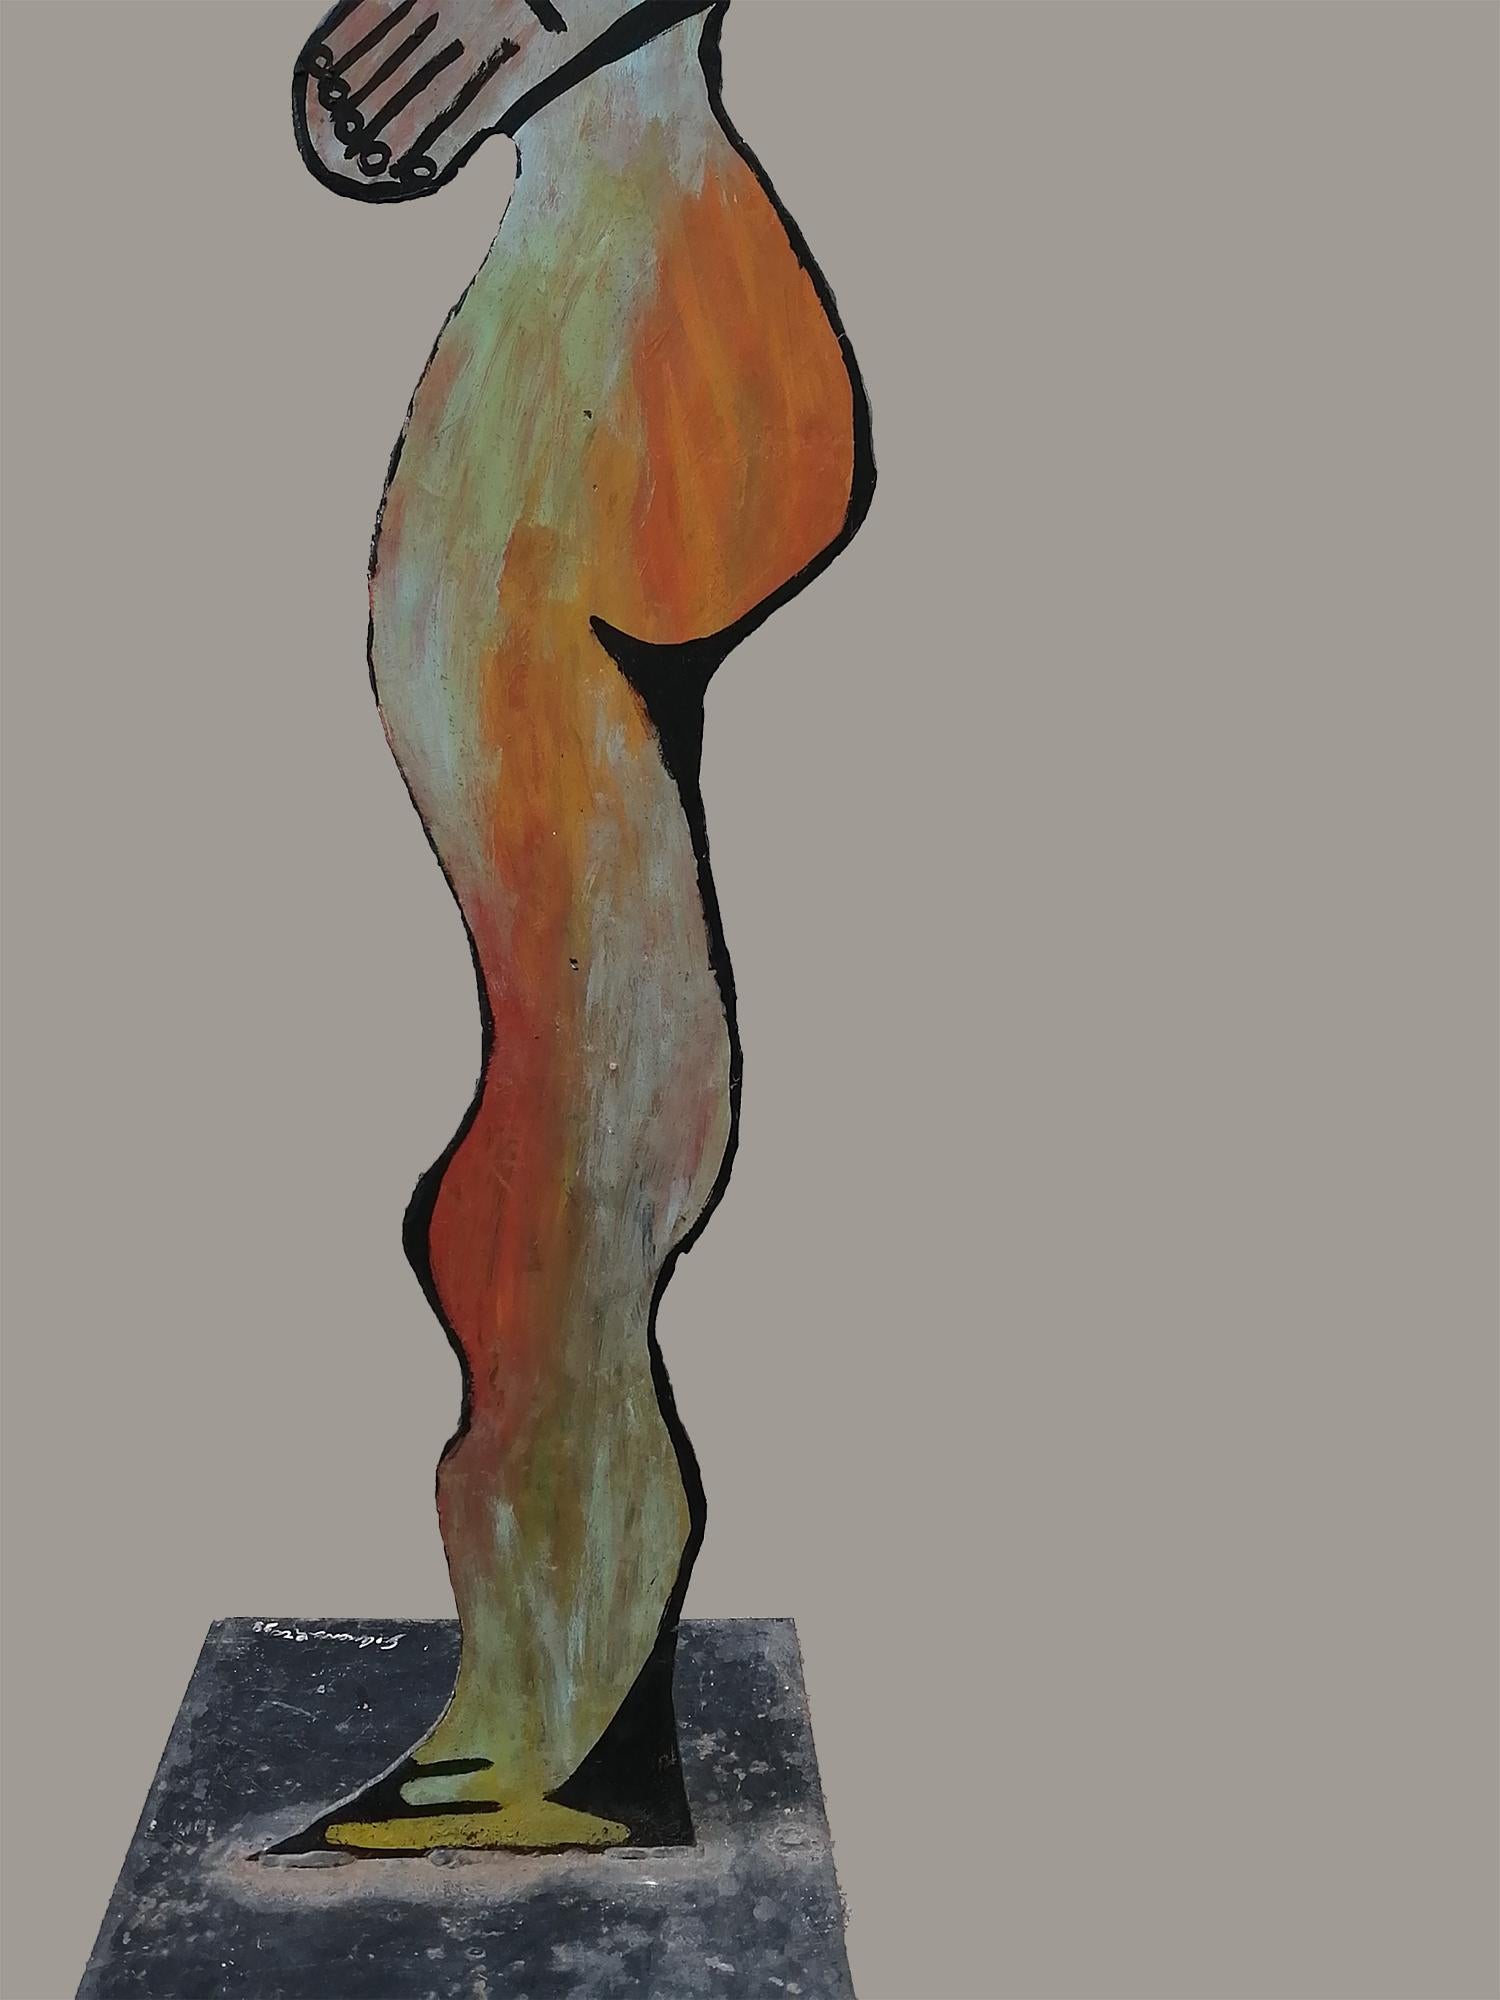 Gilberto Aceves Navarro Steel Sheet Handpainted Sculpture 2